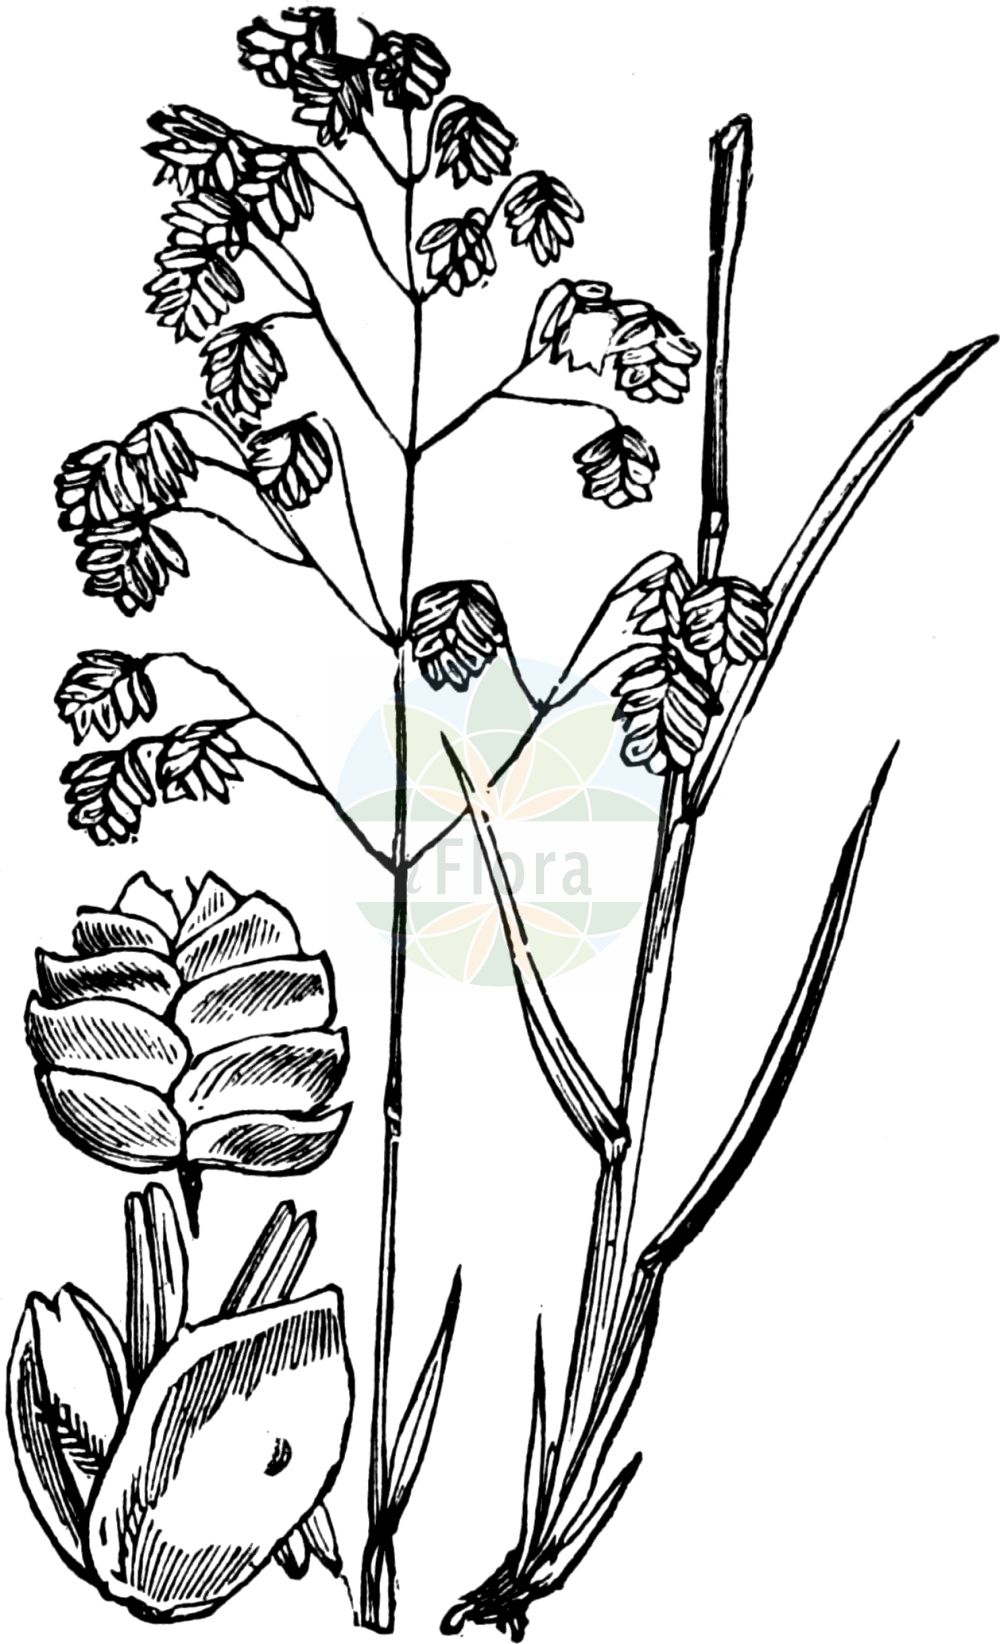 Historische Abbildung von Briza media (Gewöhnliches Zittergras - Quaking-grass). Das Bild zeigt Blatt, Bluete, Frucht und Same. ---- Historical Drawing of Briza media (Gewöhnliches Zittergras - Quaking-grass). The image is showing leaf, flower, fruit and seed.(Briza media,Gewöhnliches Zittergras,Quaking-grass,Briza australis,Briza intermedia,Briza media,Gewoehnliches Zittergras,Mittleres Zittergras,Quaking-grass,Common Quaking Grass,Intermediate Quaking Grass,Perennial Quaking Grass,Tottergrass,Briza,Zittergras,Quakinggrass,Poaceae,Süßgräser,Grass family,Blatt,Bluete,Frucht,Same,leaf,flower,fruit,seed,Fitch et al. (1880))